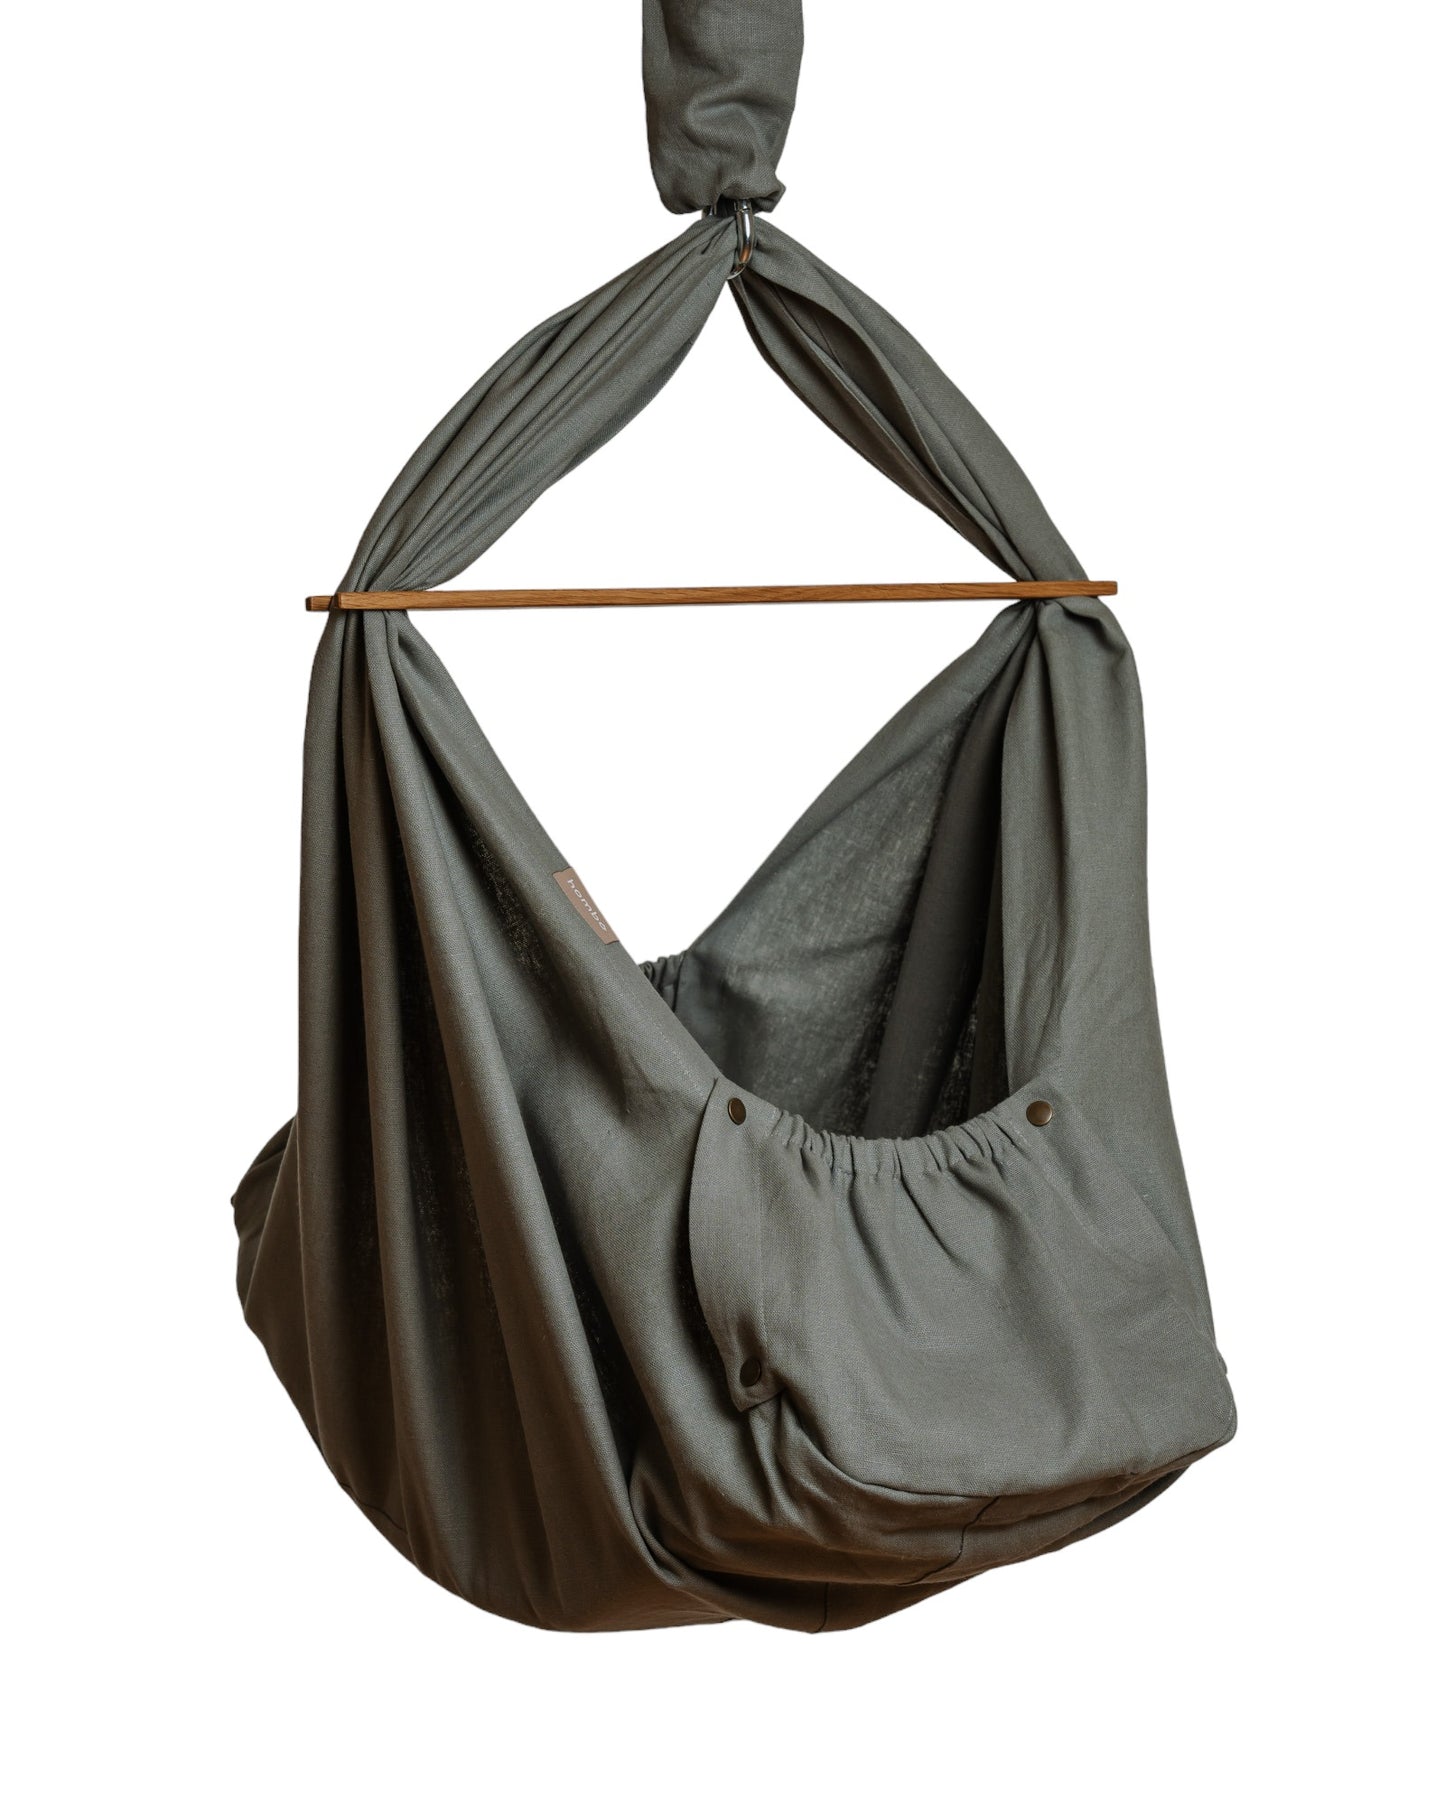 homba® baby hook hanging cradle linen gray 